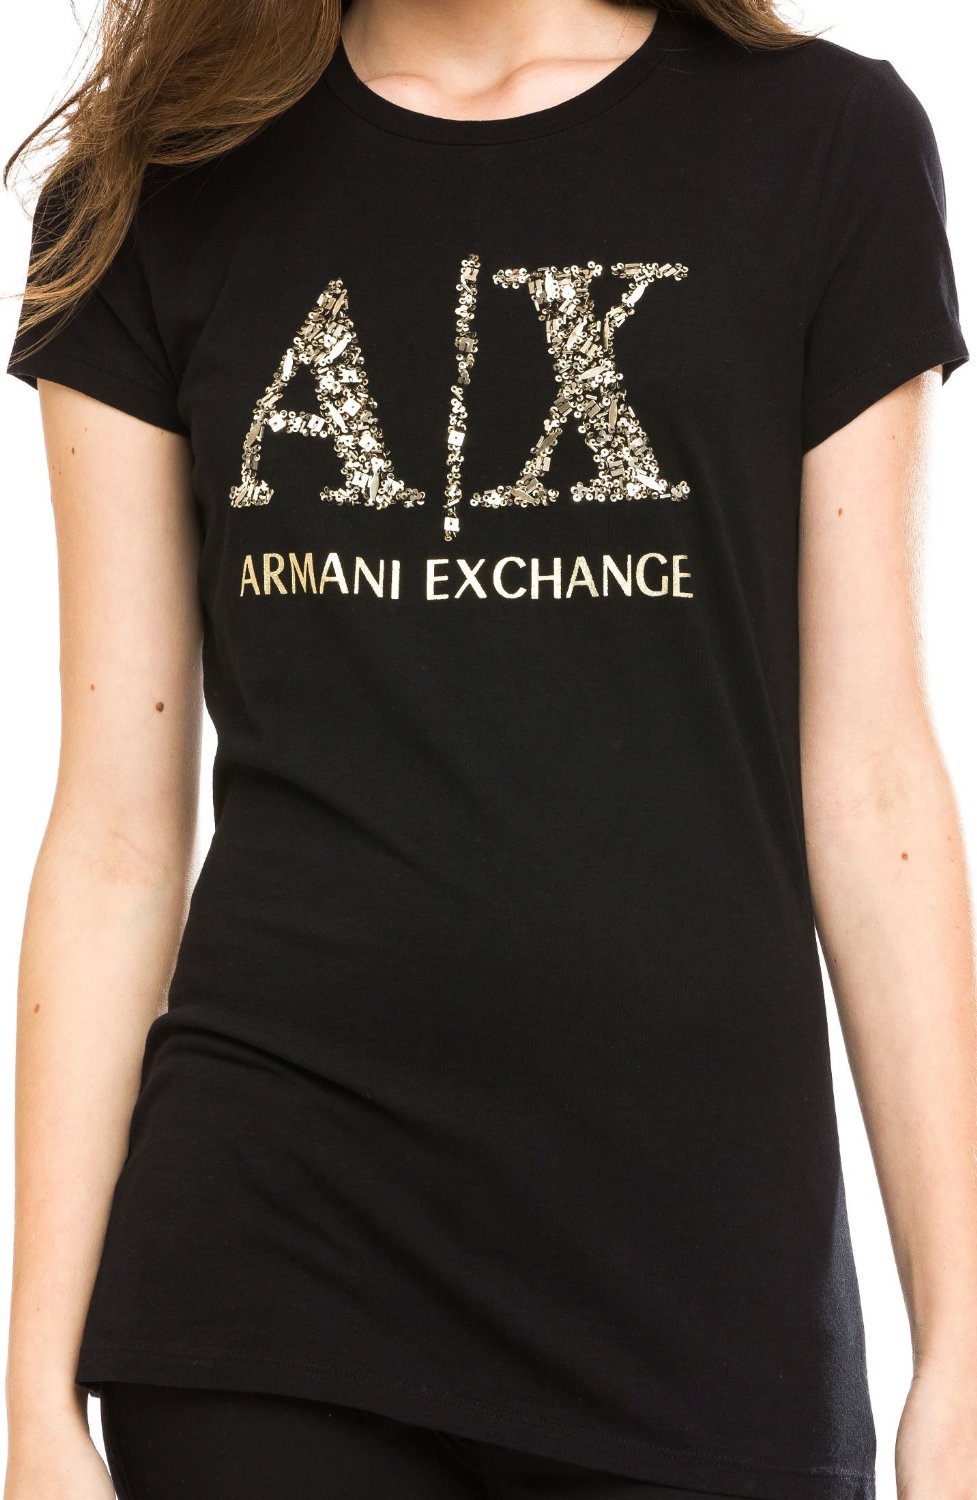 armani exchange tees